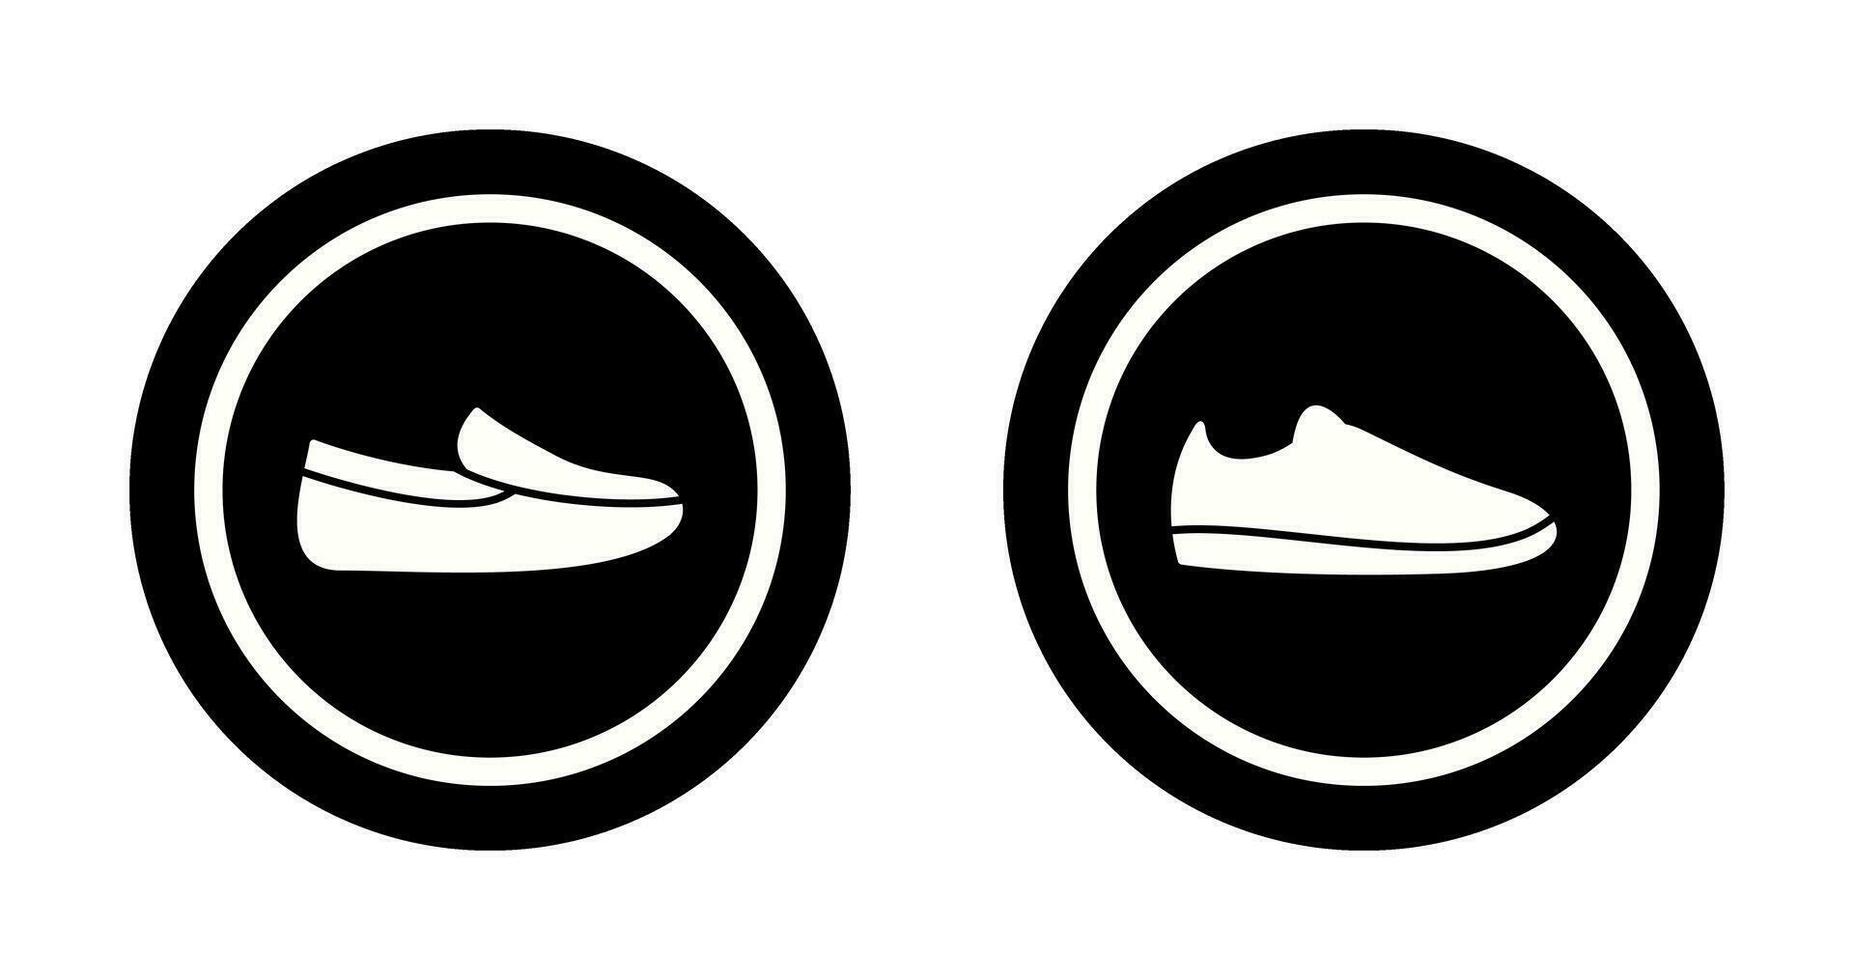 Herren Slipper und beiläufig Schuhe Symbol vektor